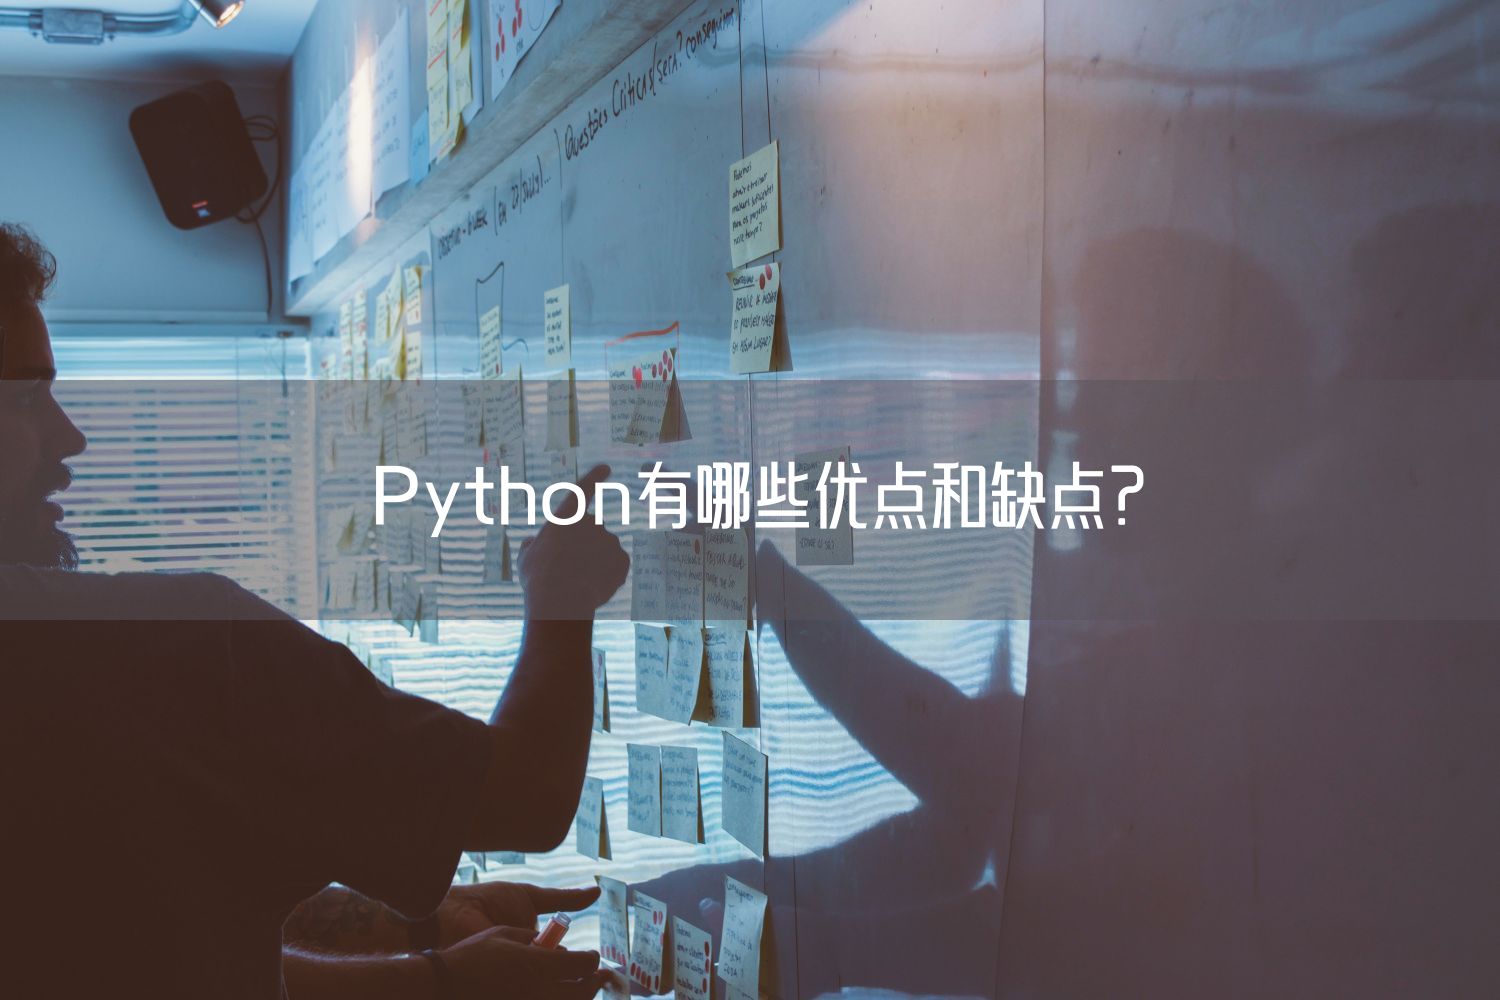  Python有哪些优点和缺点？